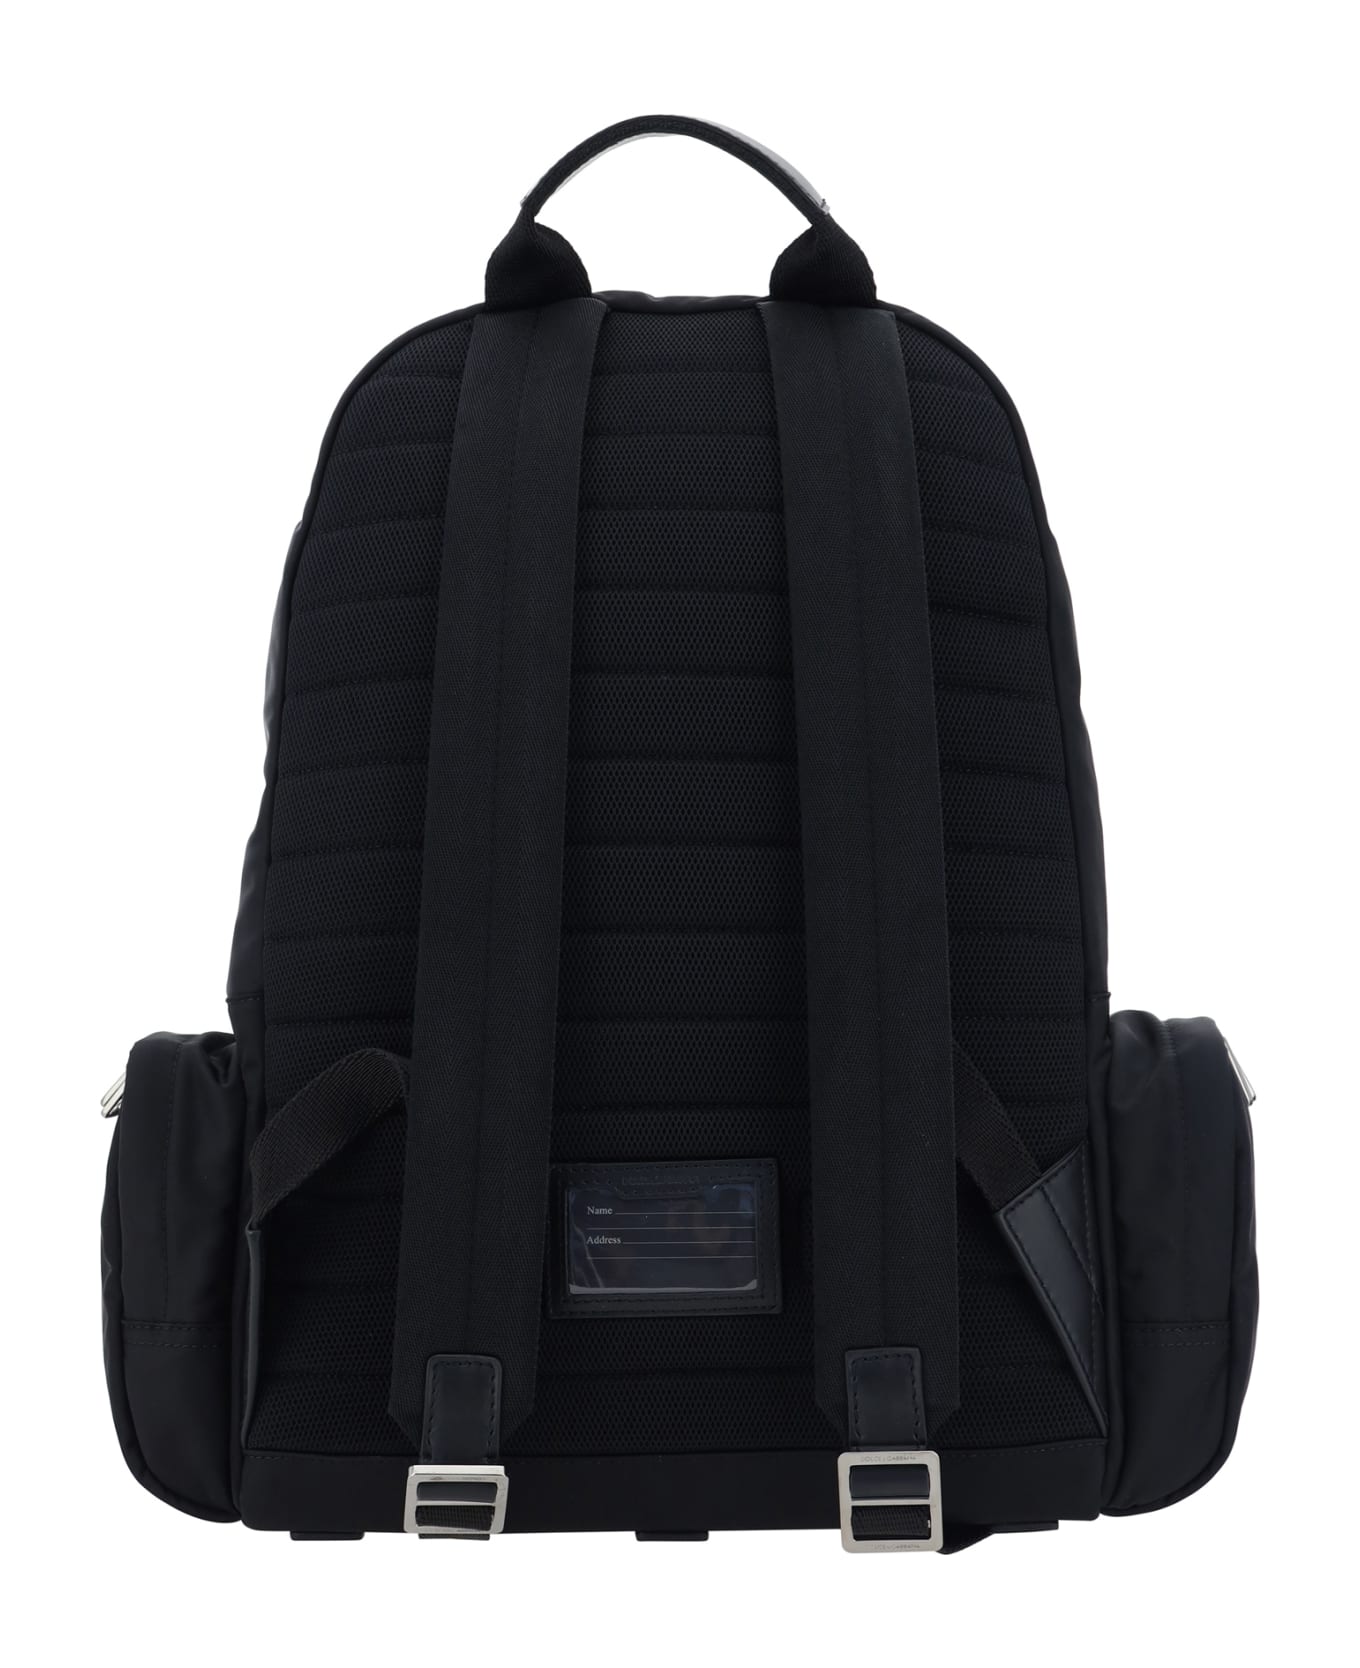 Dolce & Gabbana Backpack - Nero Nero